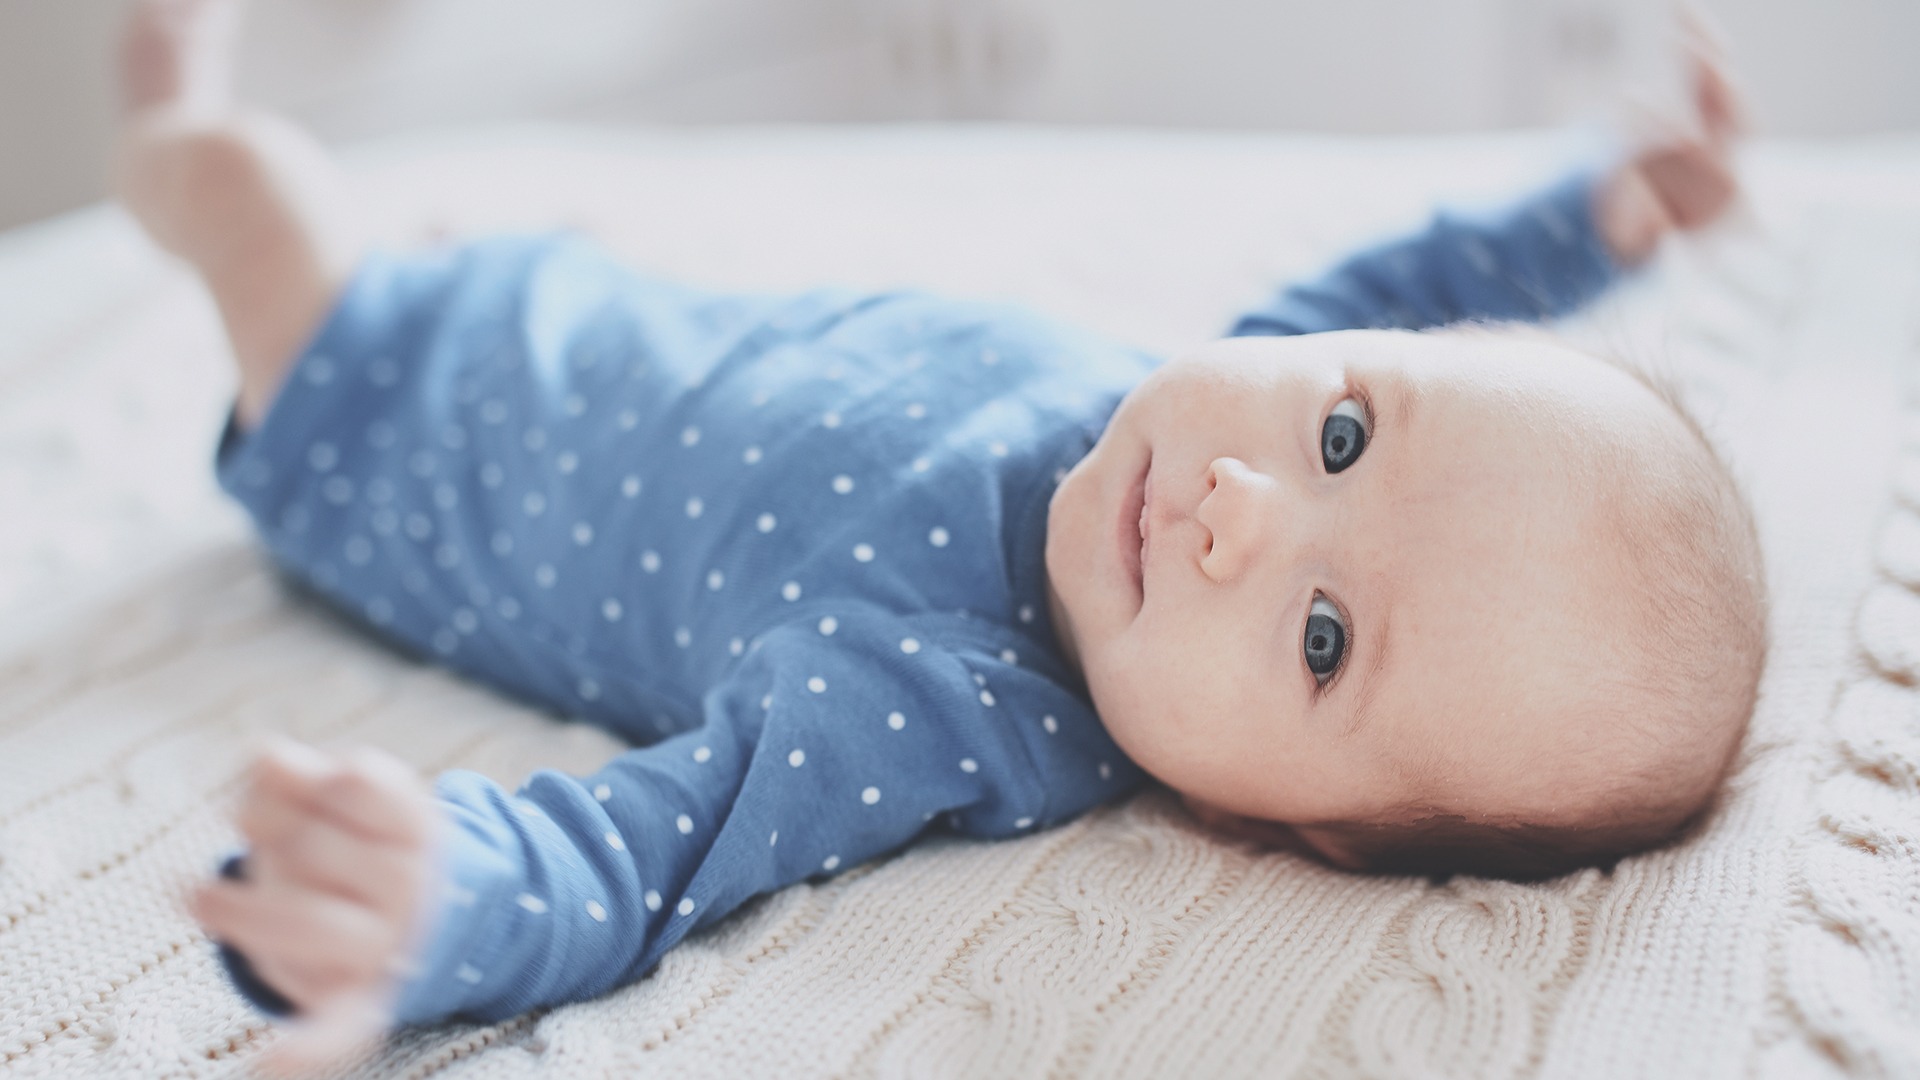 Miluklub - A baba fejlődése hónapról hónapra: A 6 hónapos baba játéka, étrendje és mozgásfejlődése.